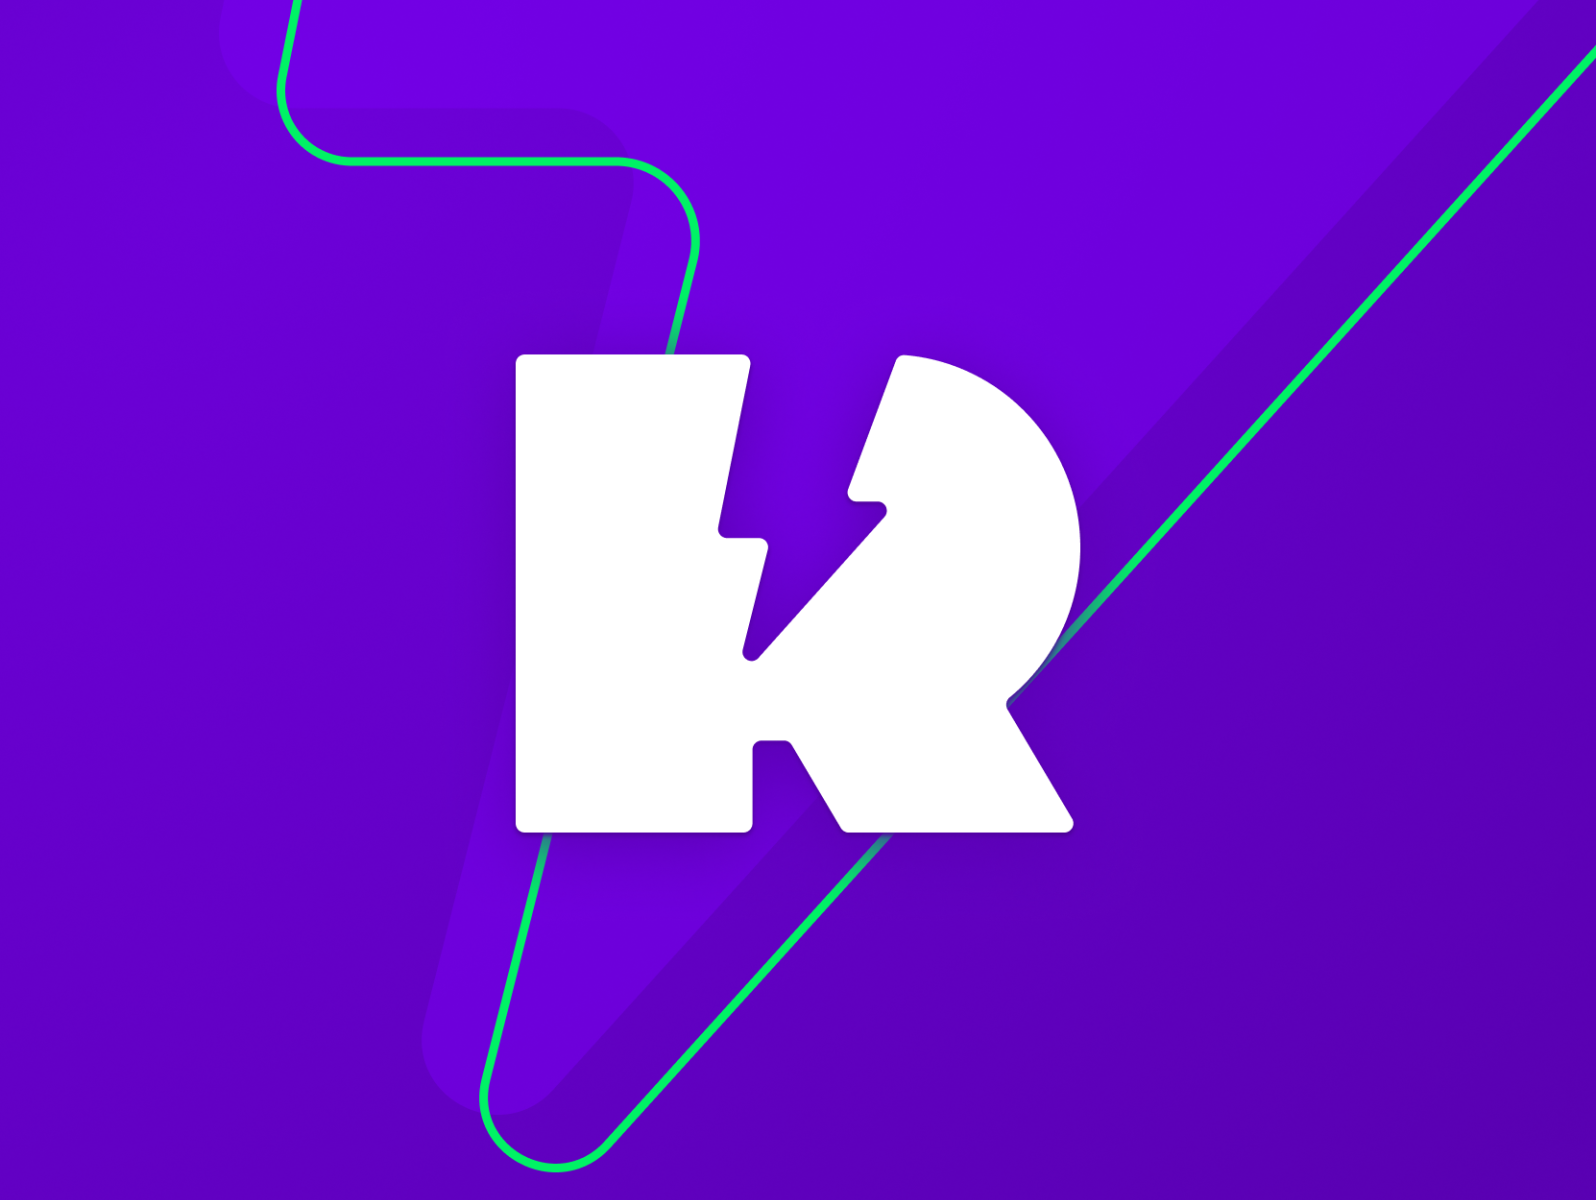 Releese App - Static Logo by Denis Ryaboshtanov on Dribbble